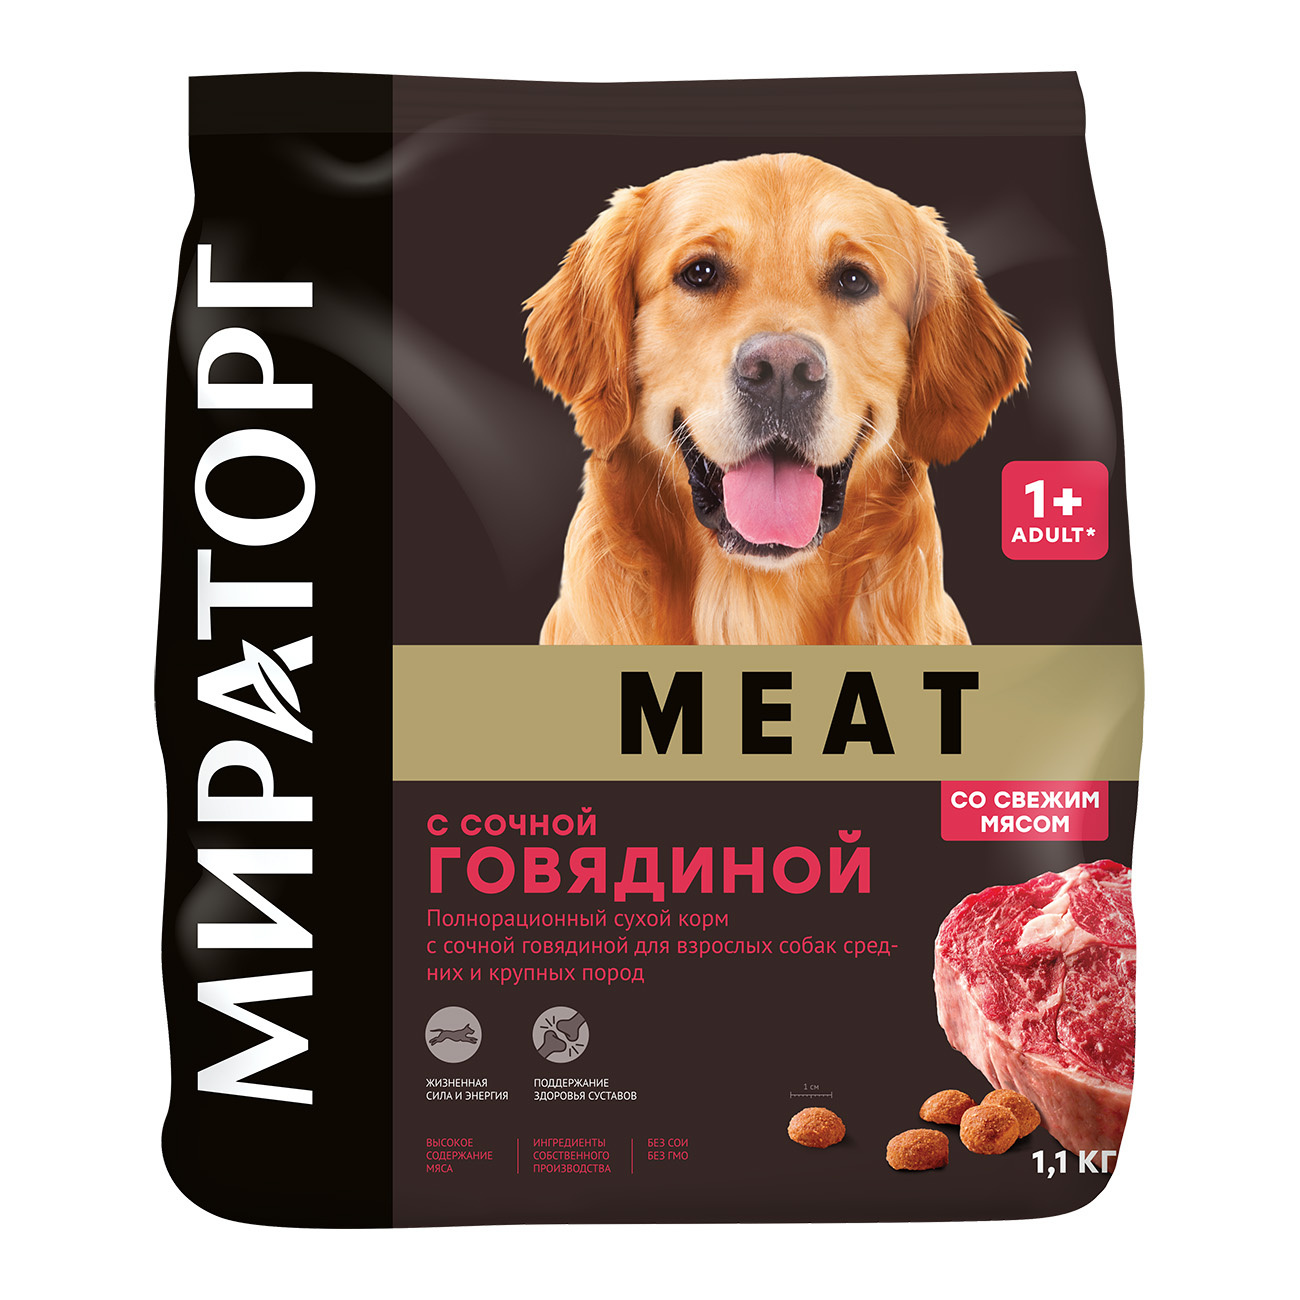 Мираторг Мираторг полнорационный сухой корм для взрослых собак средних и крупных пород с сочной говядиной (1,1 кг)